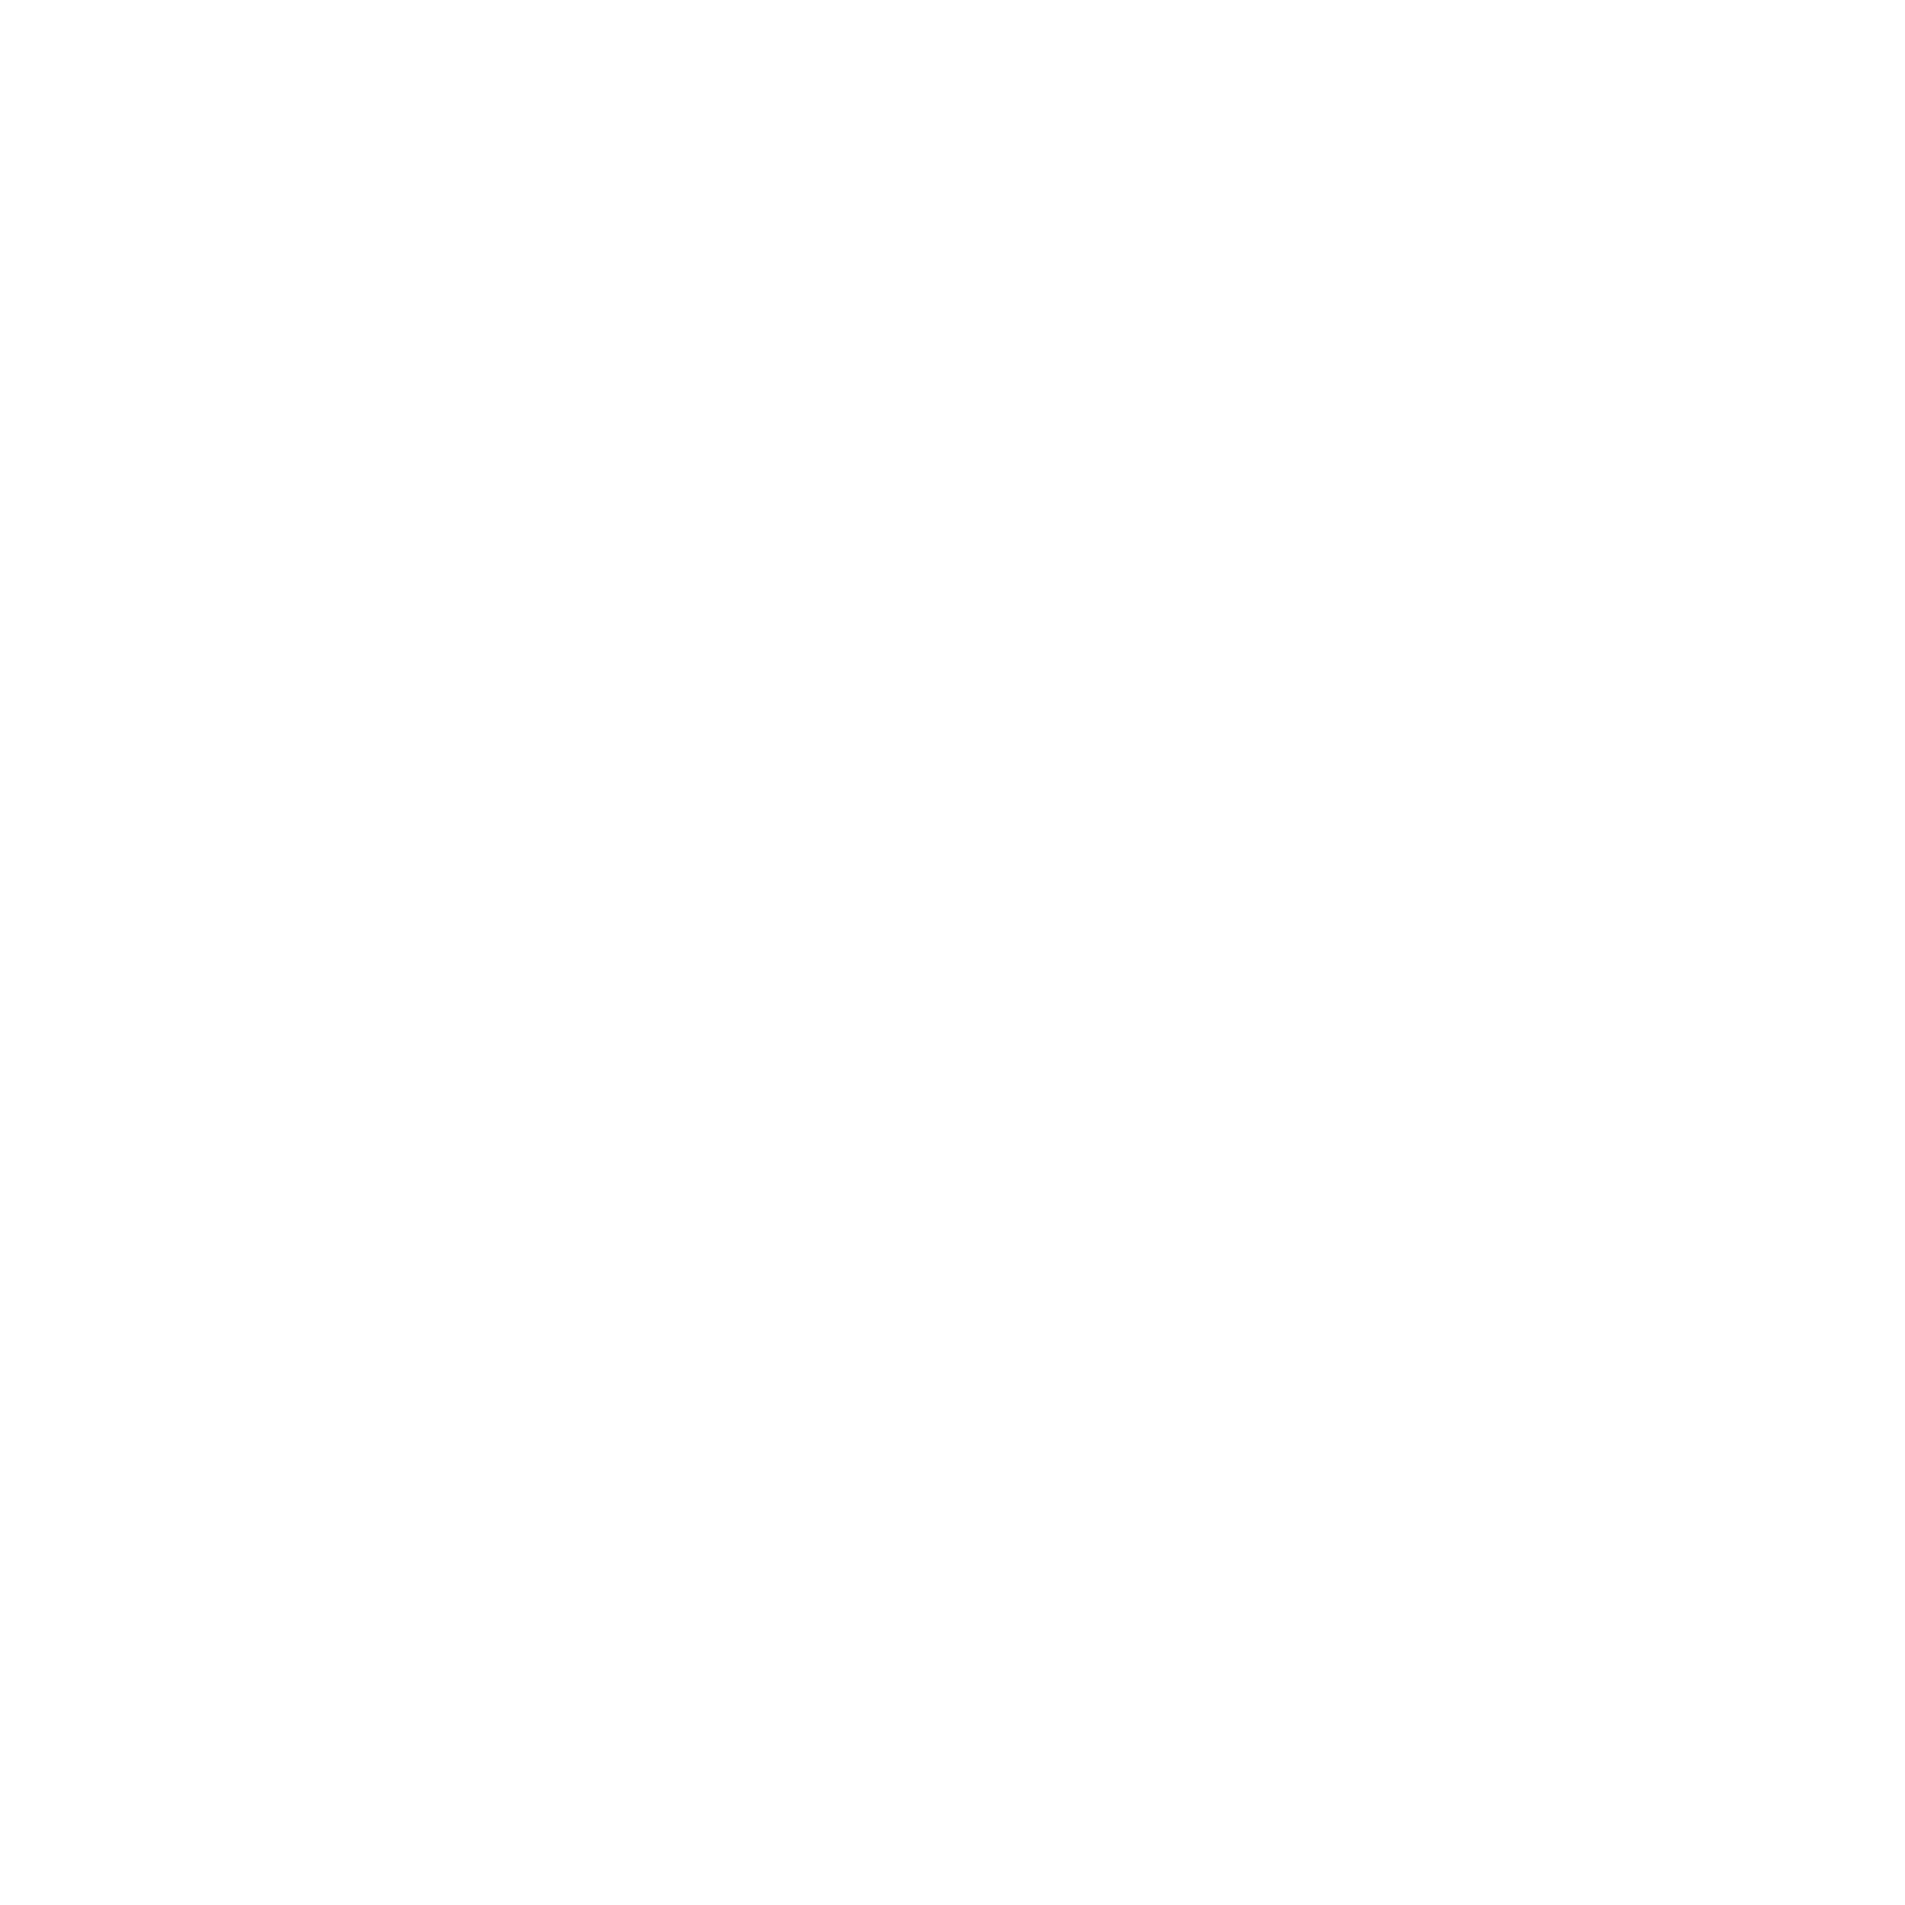 BeatTrip